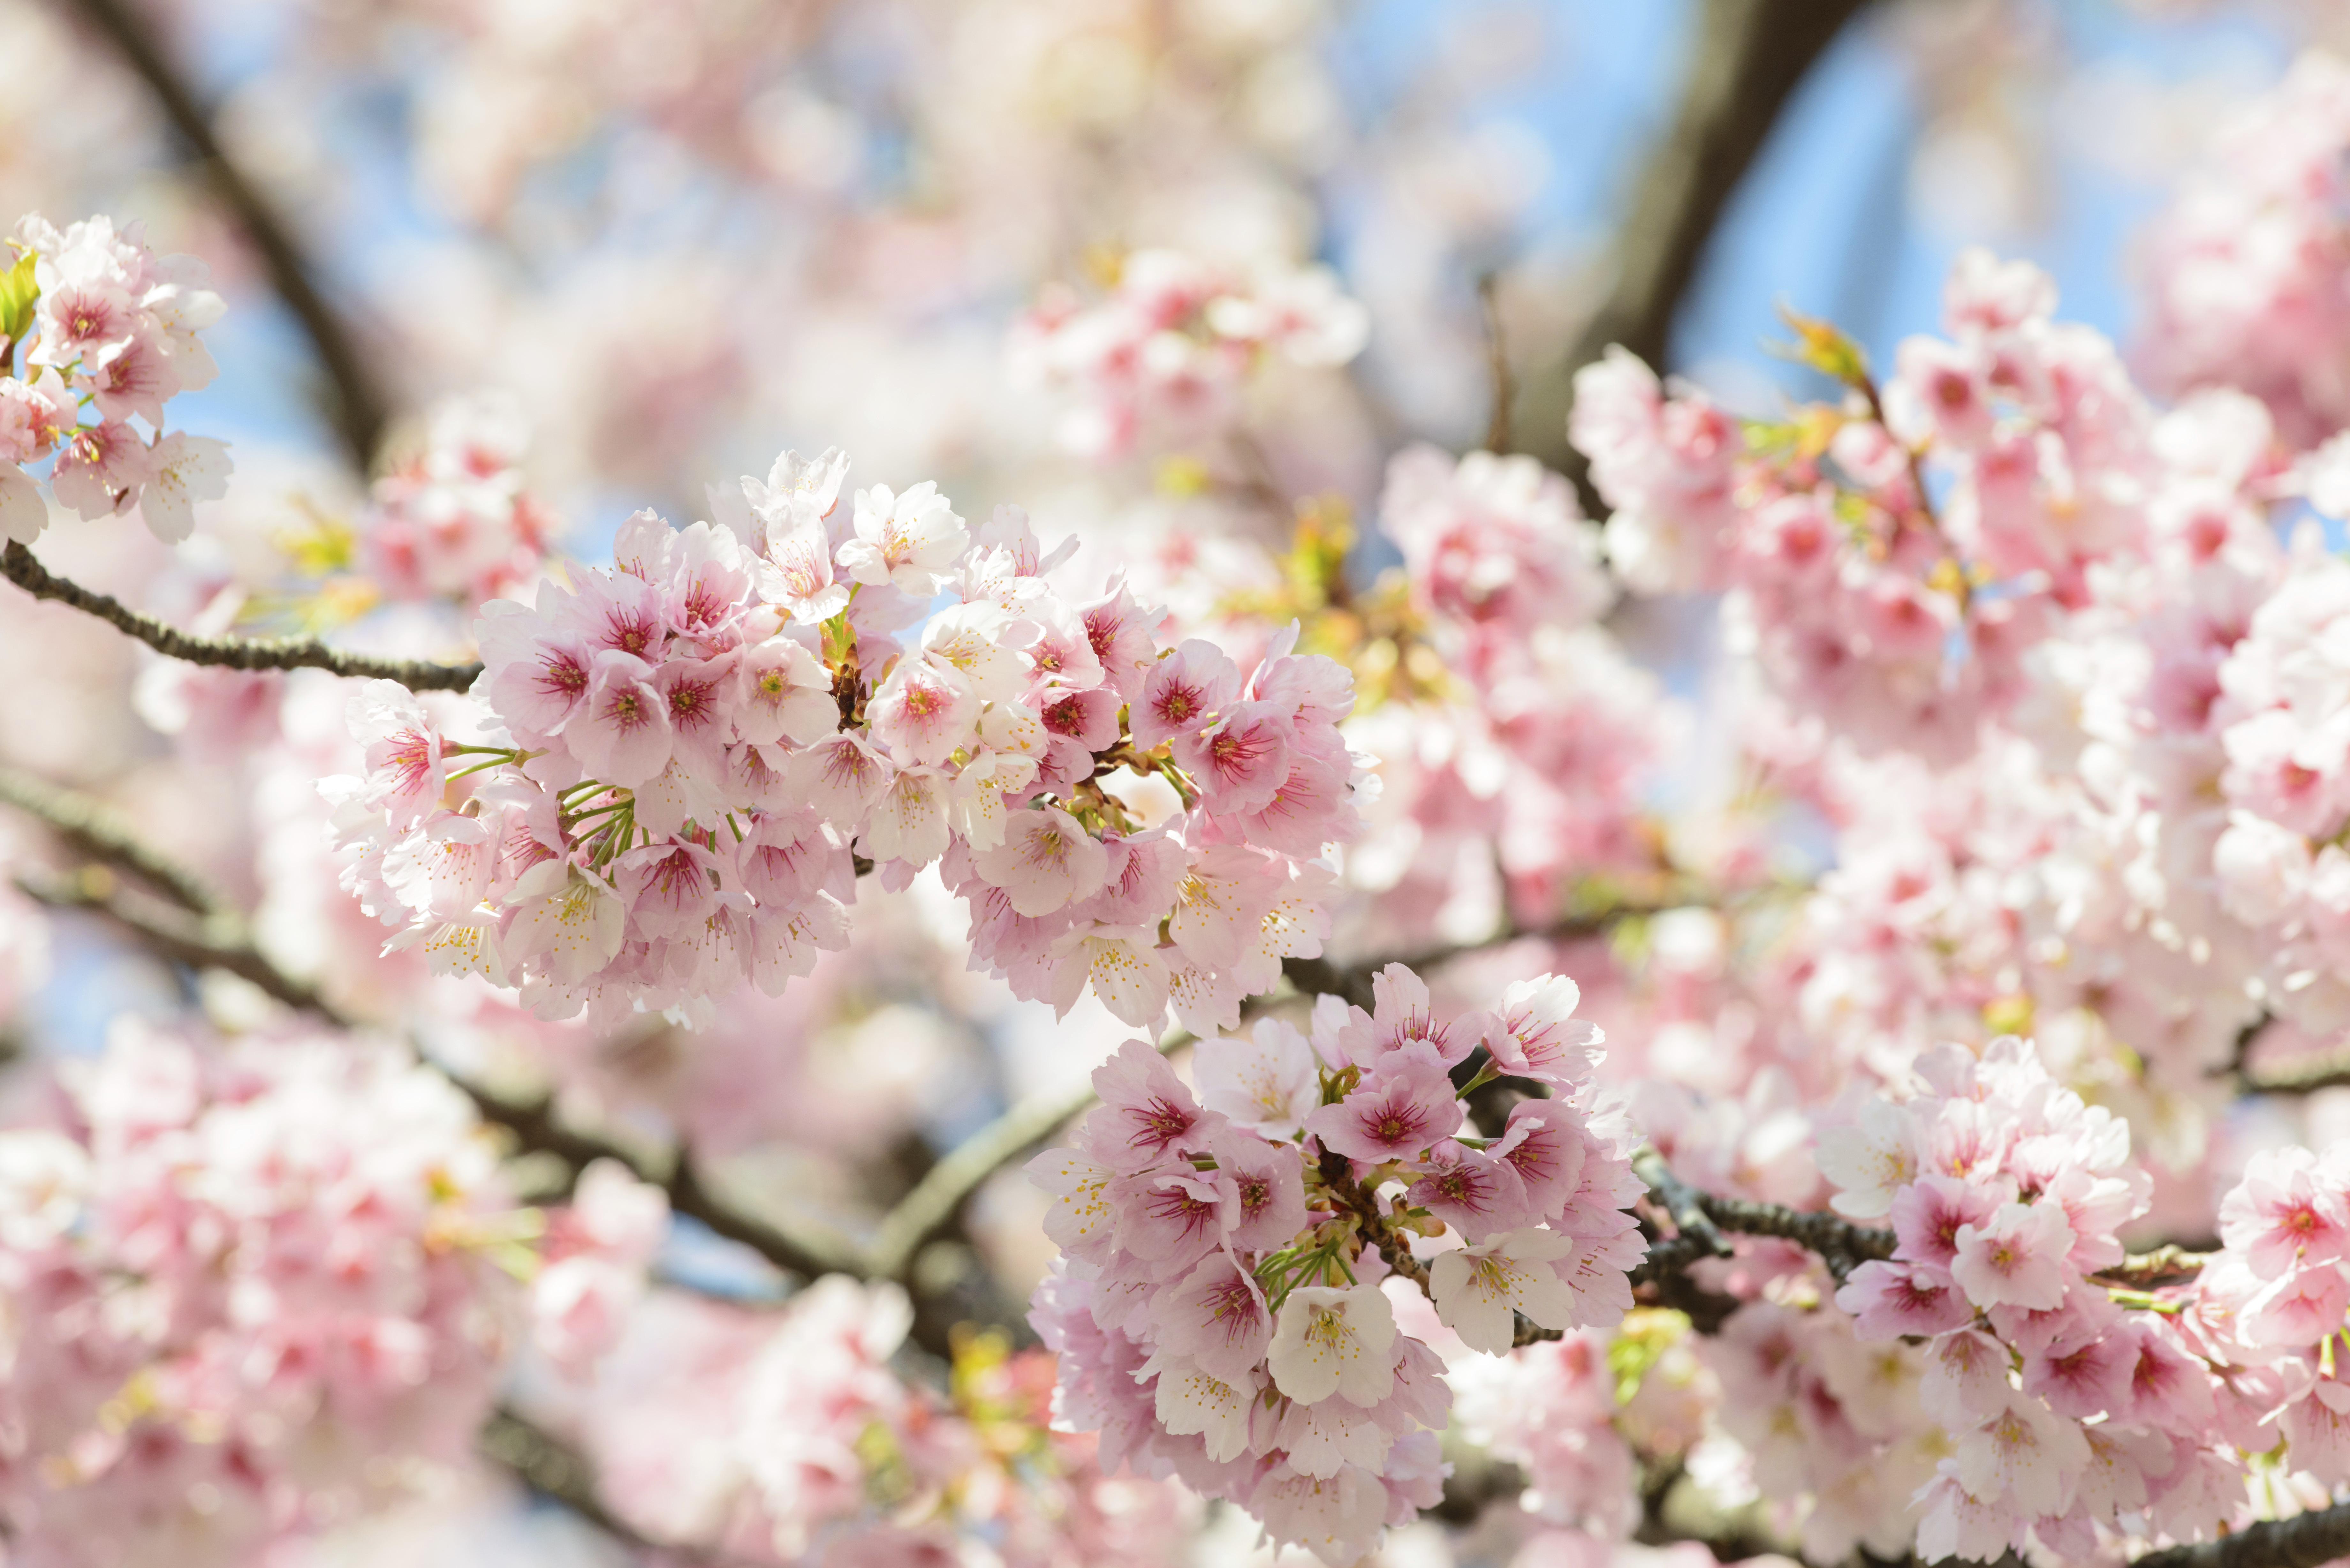 El espectáculo de los cerezos en flor en China os dejará sin habla